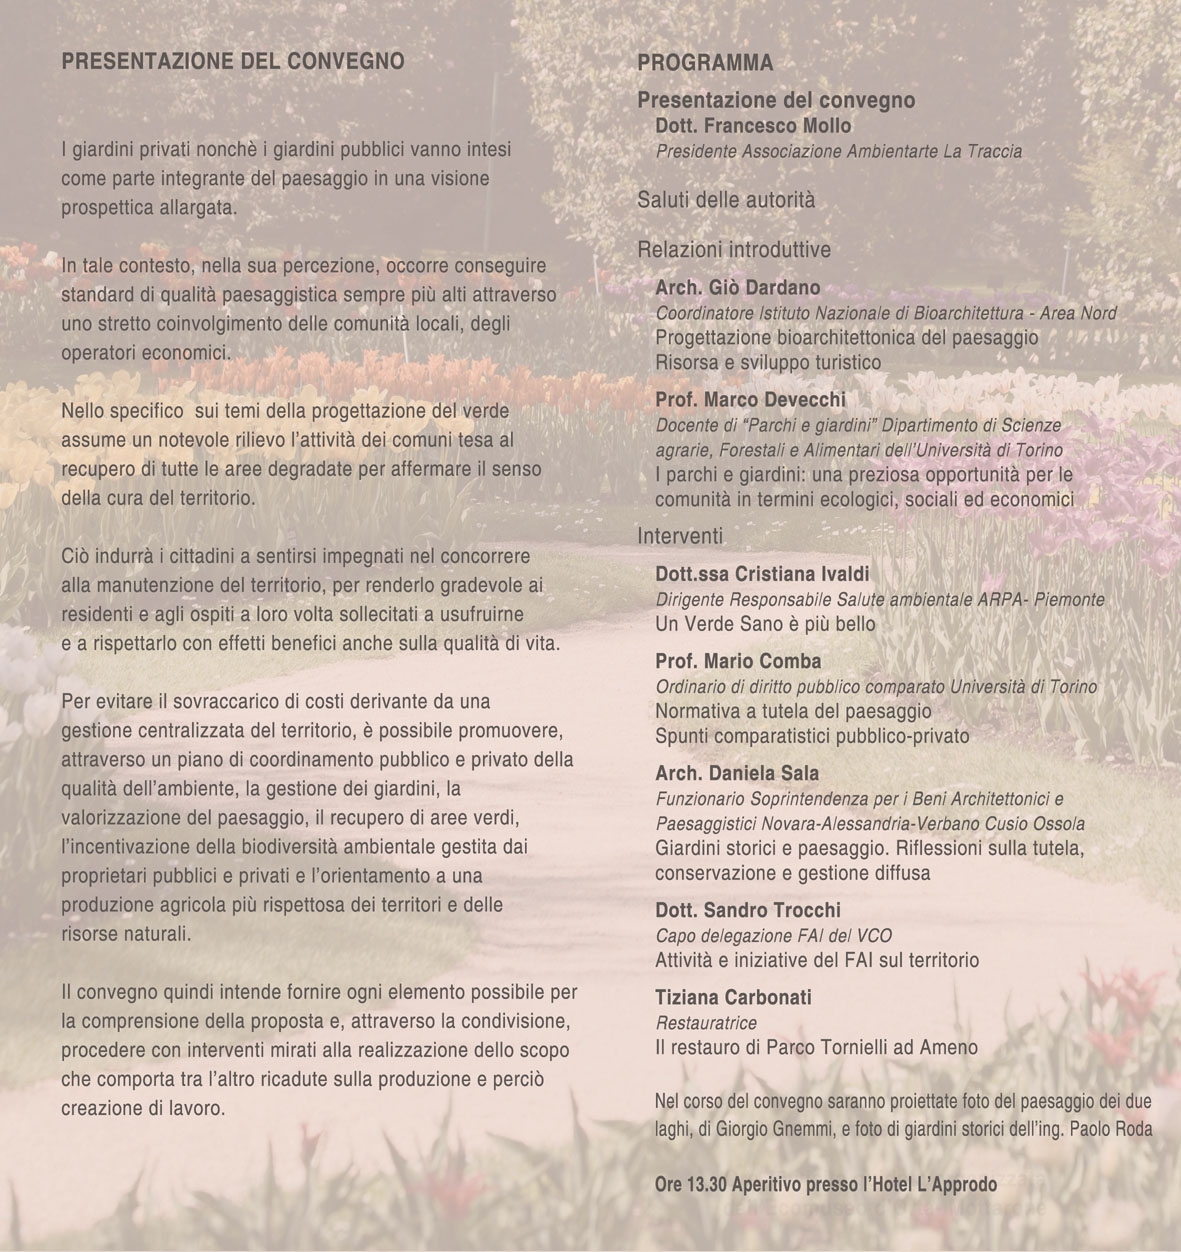 Programma del Convegno su Architettura dei giardini nel paesaggio a Pettenasco (NO), sabato 6 luglio 2013.